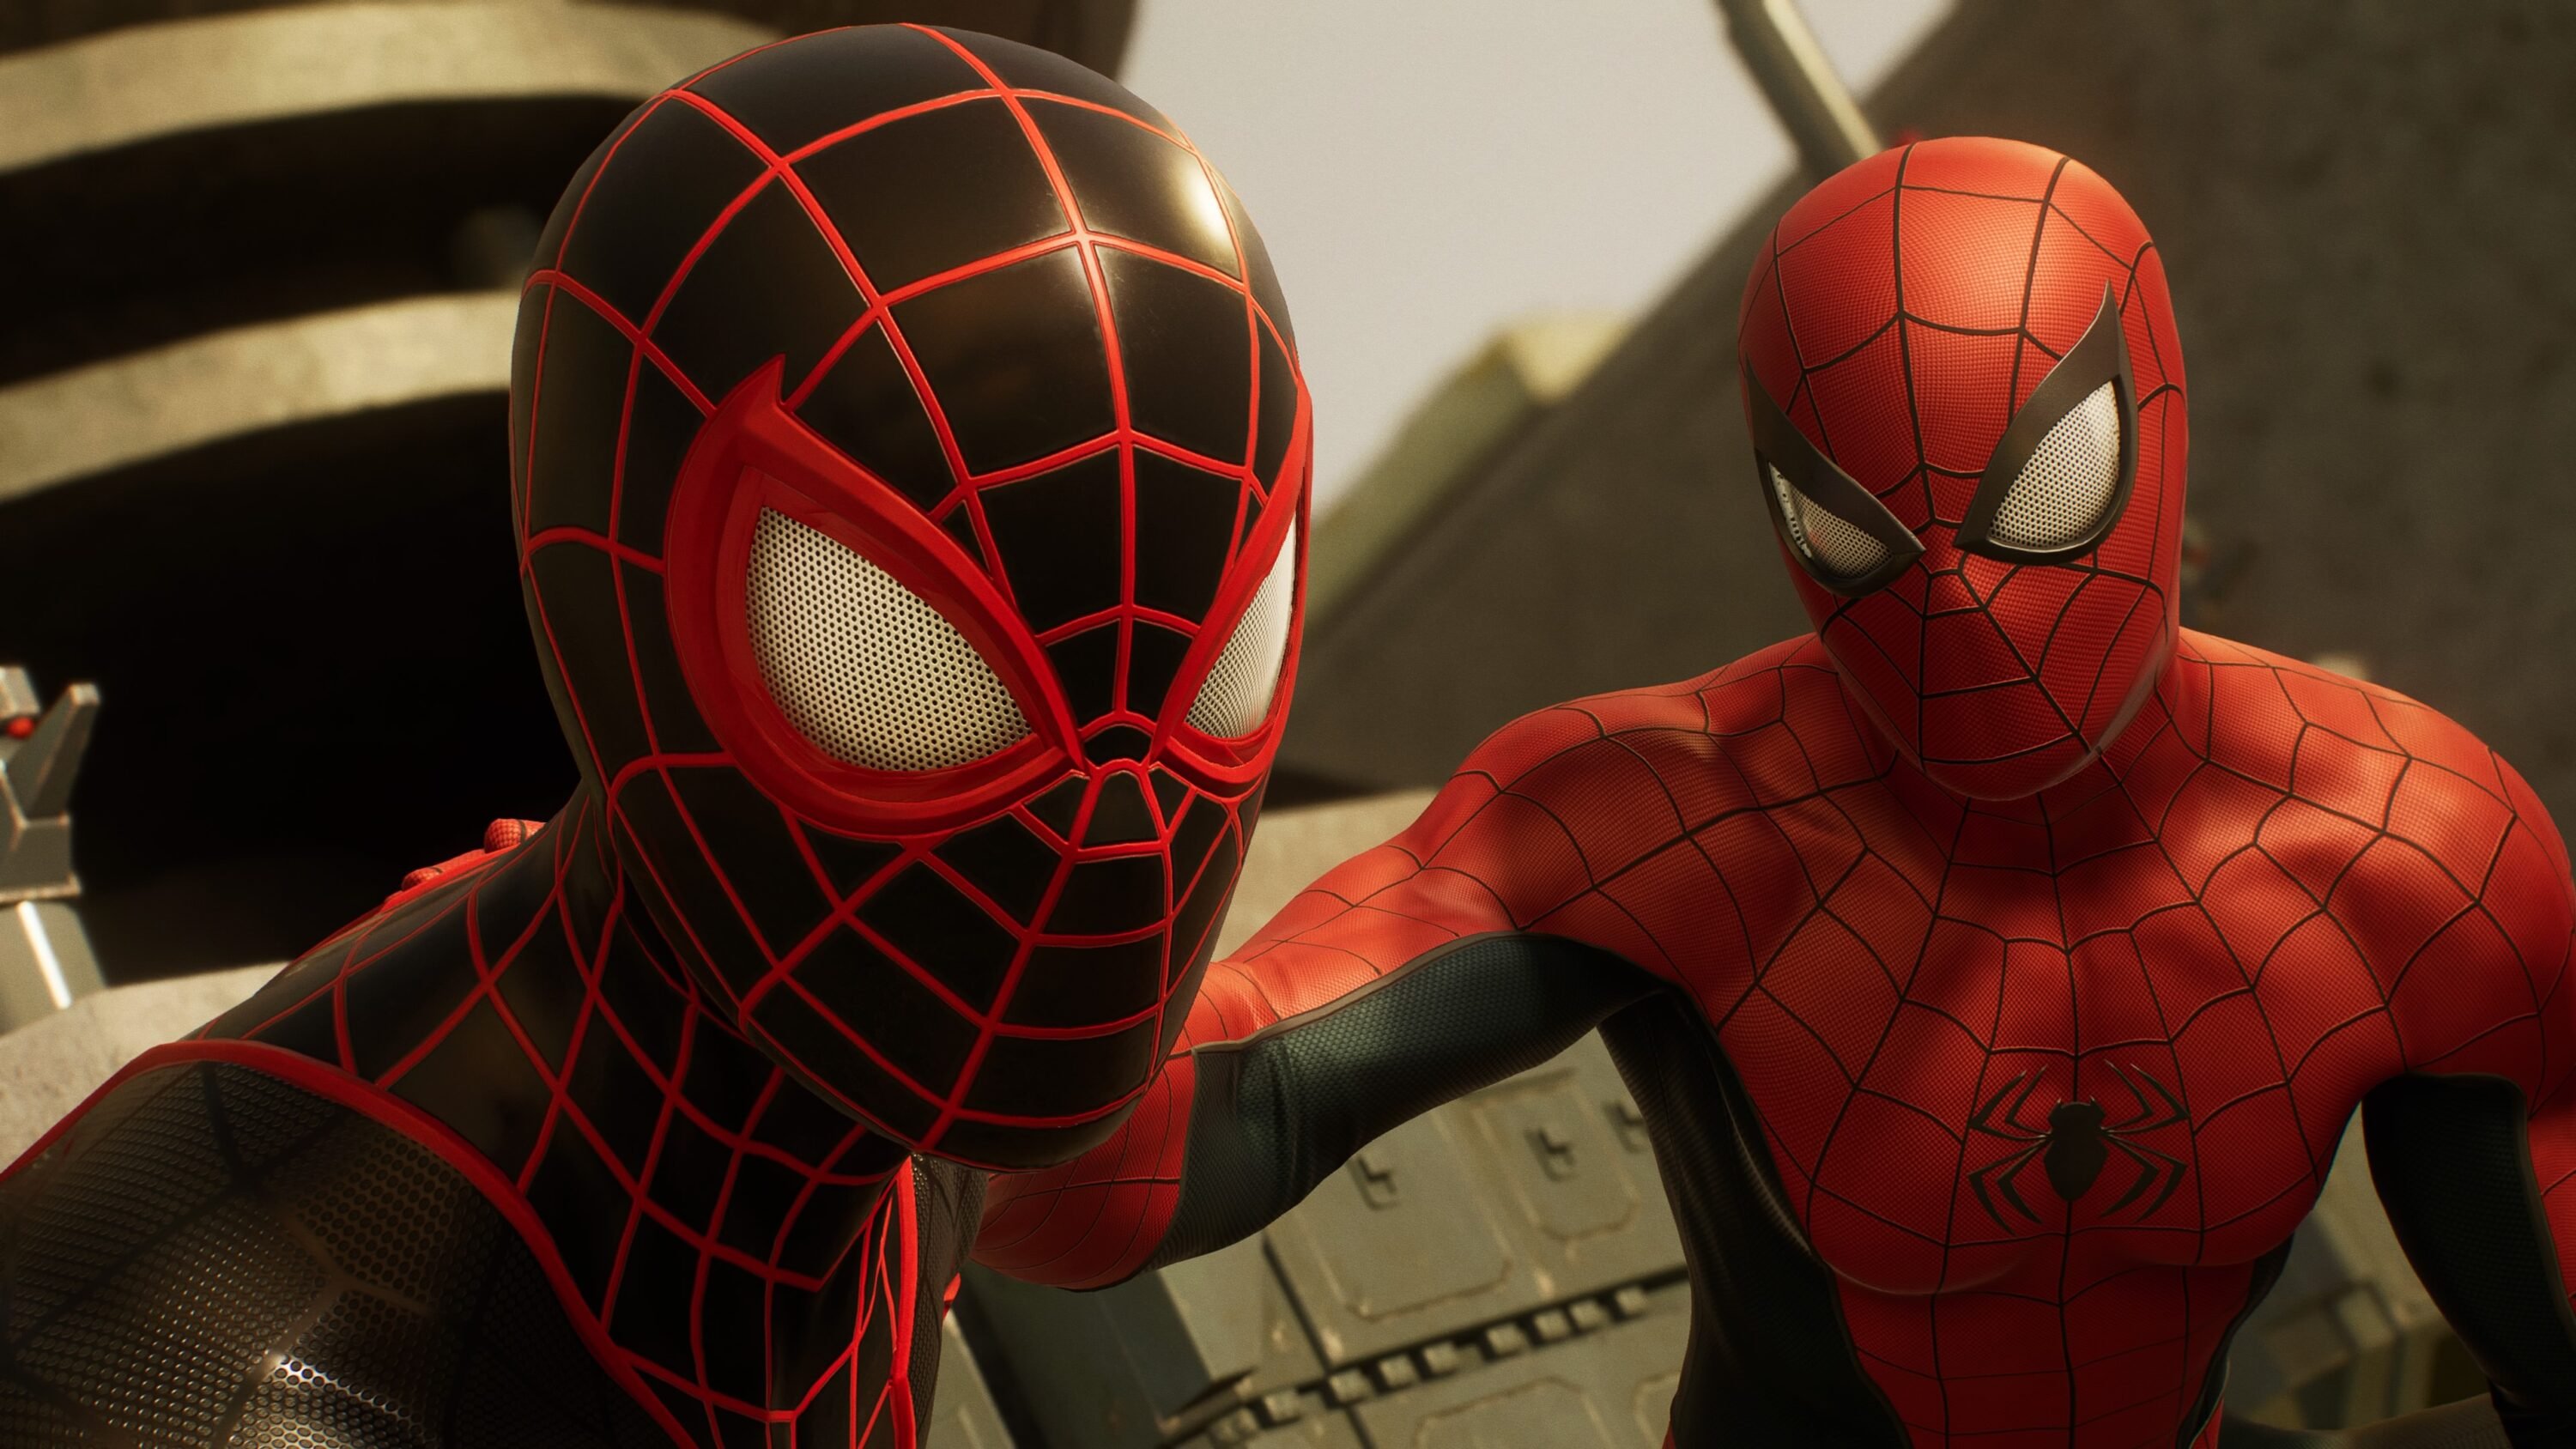 Análise: Marvel's Spider-Man 2 é jogo dos sonhos para fãs do Homem